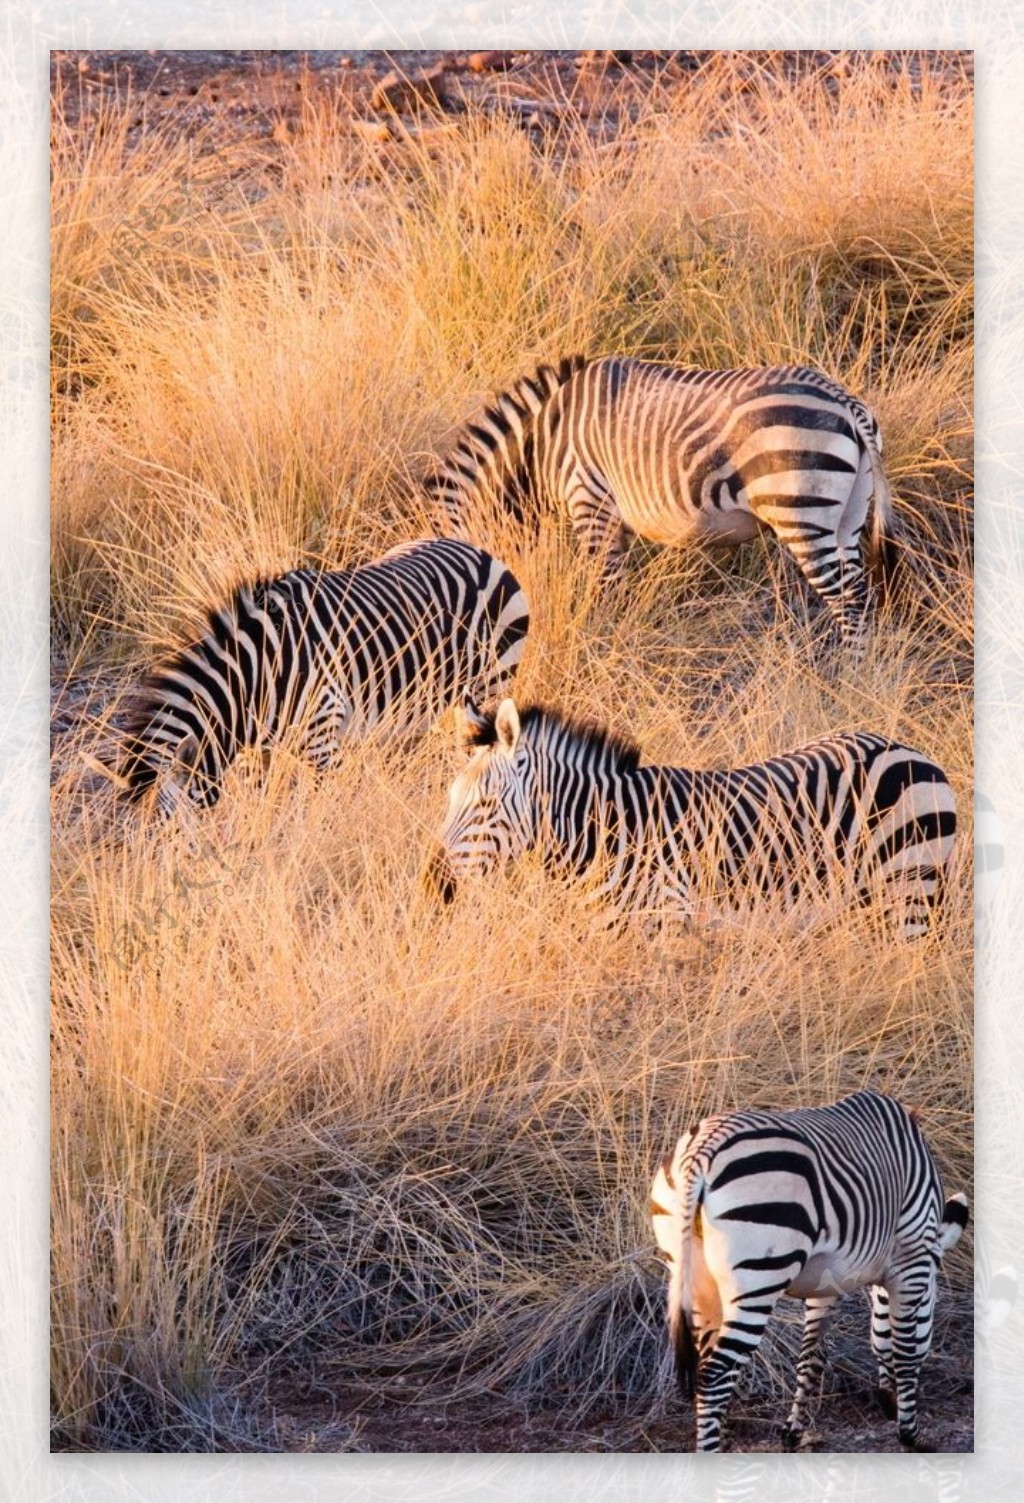 非洲草原的斑马